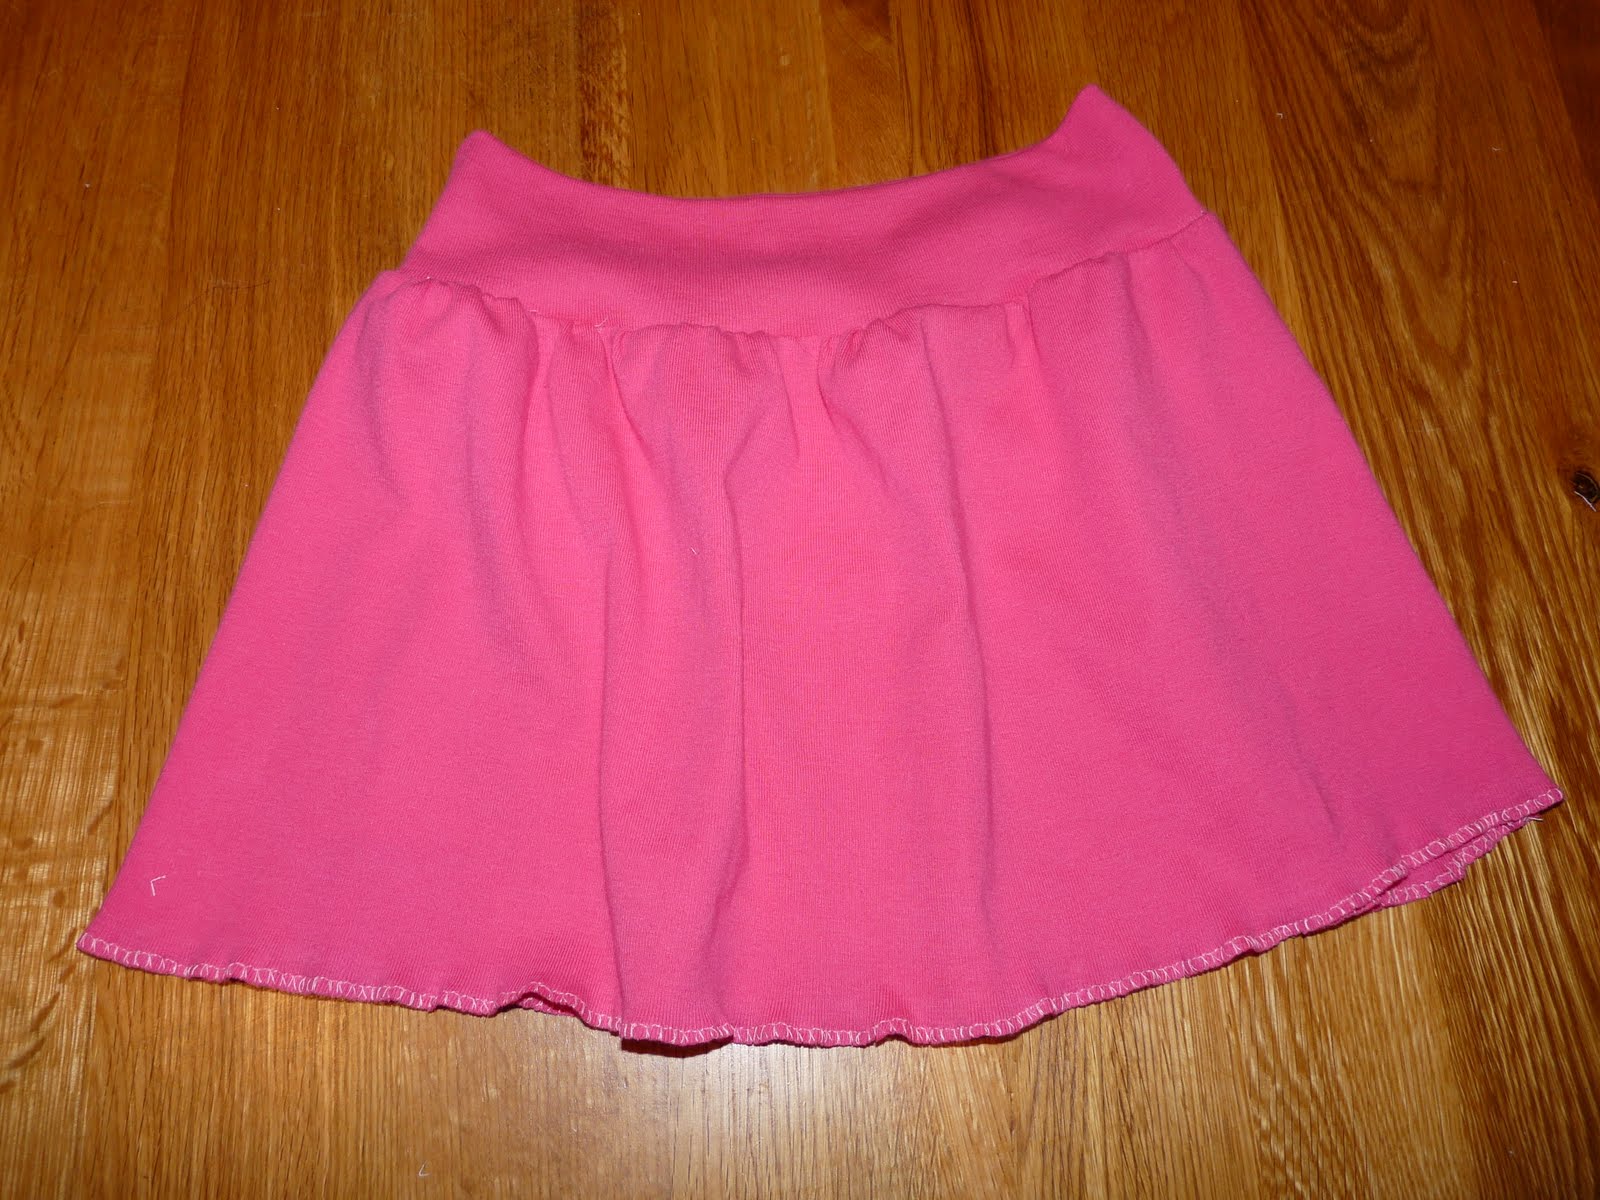 Our Homemade Home: Girls Jersey Skirt